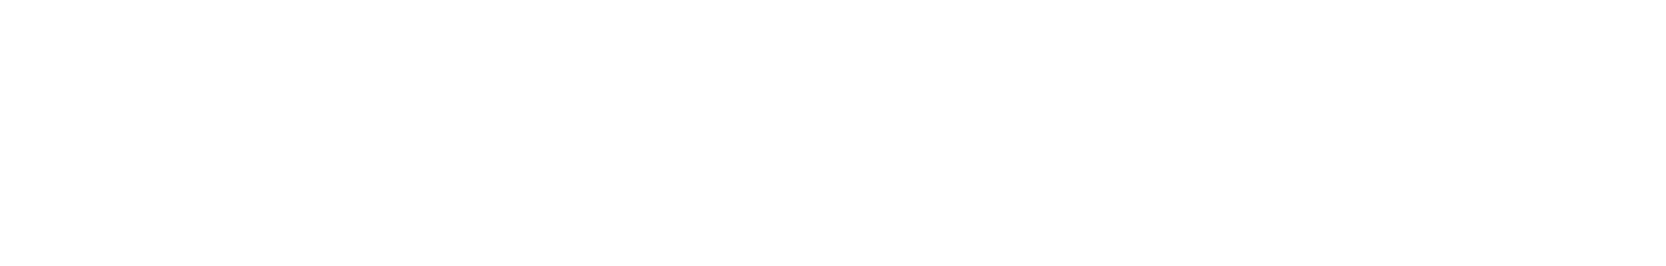 Torrid logo large for dark backgrounds (transparent PNG)